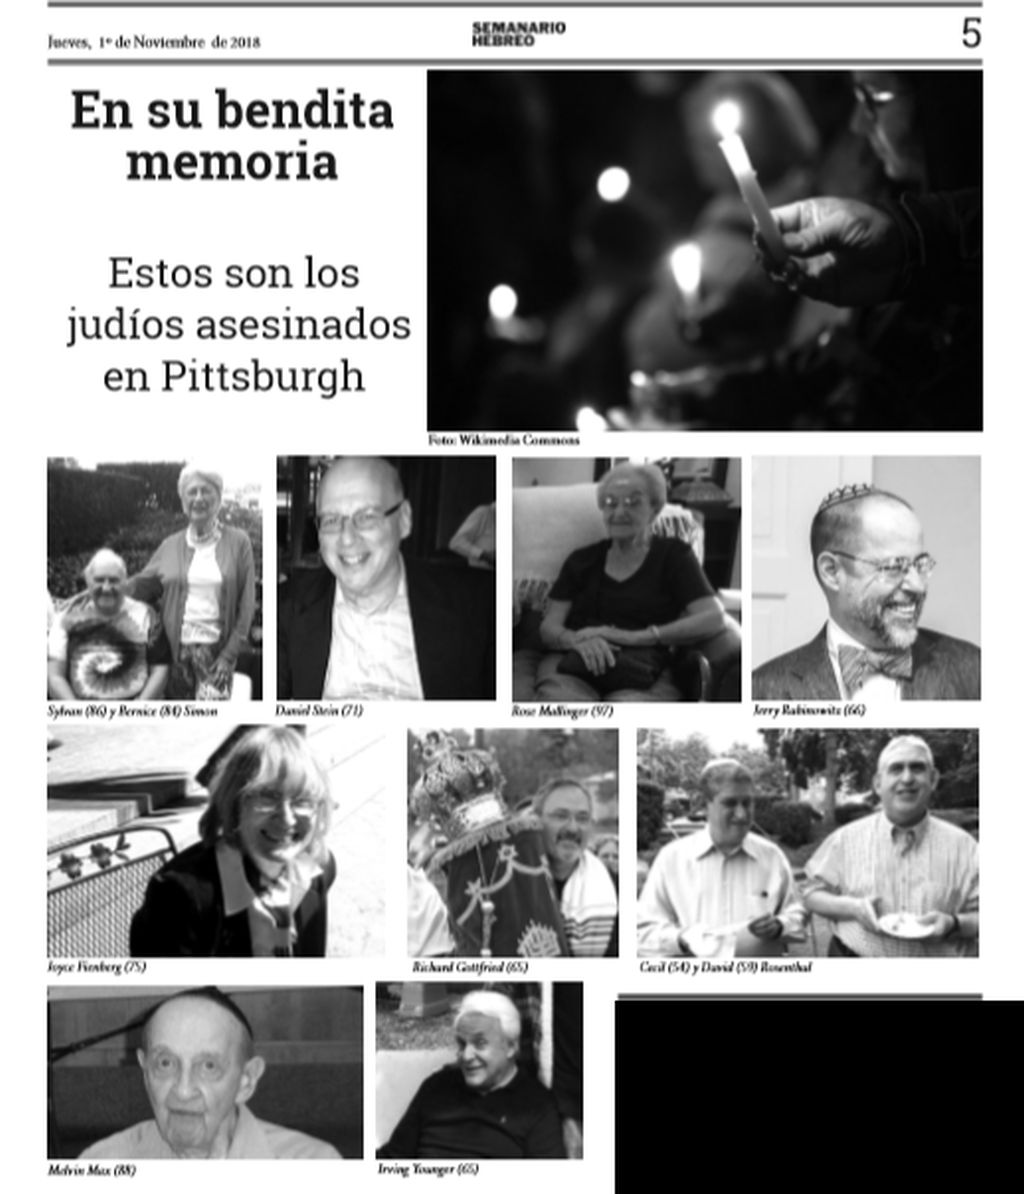 Los 11 muertos en el atentado de Pittsburgh. Publicamos las fotos en la edición impresa de Semanario Hebreo, el 1° de noviembre del 2018.